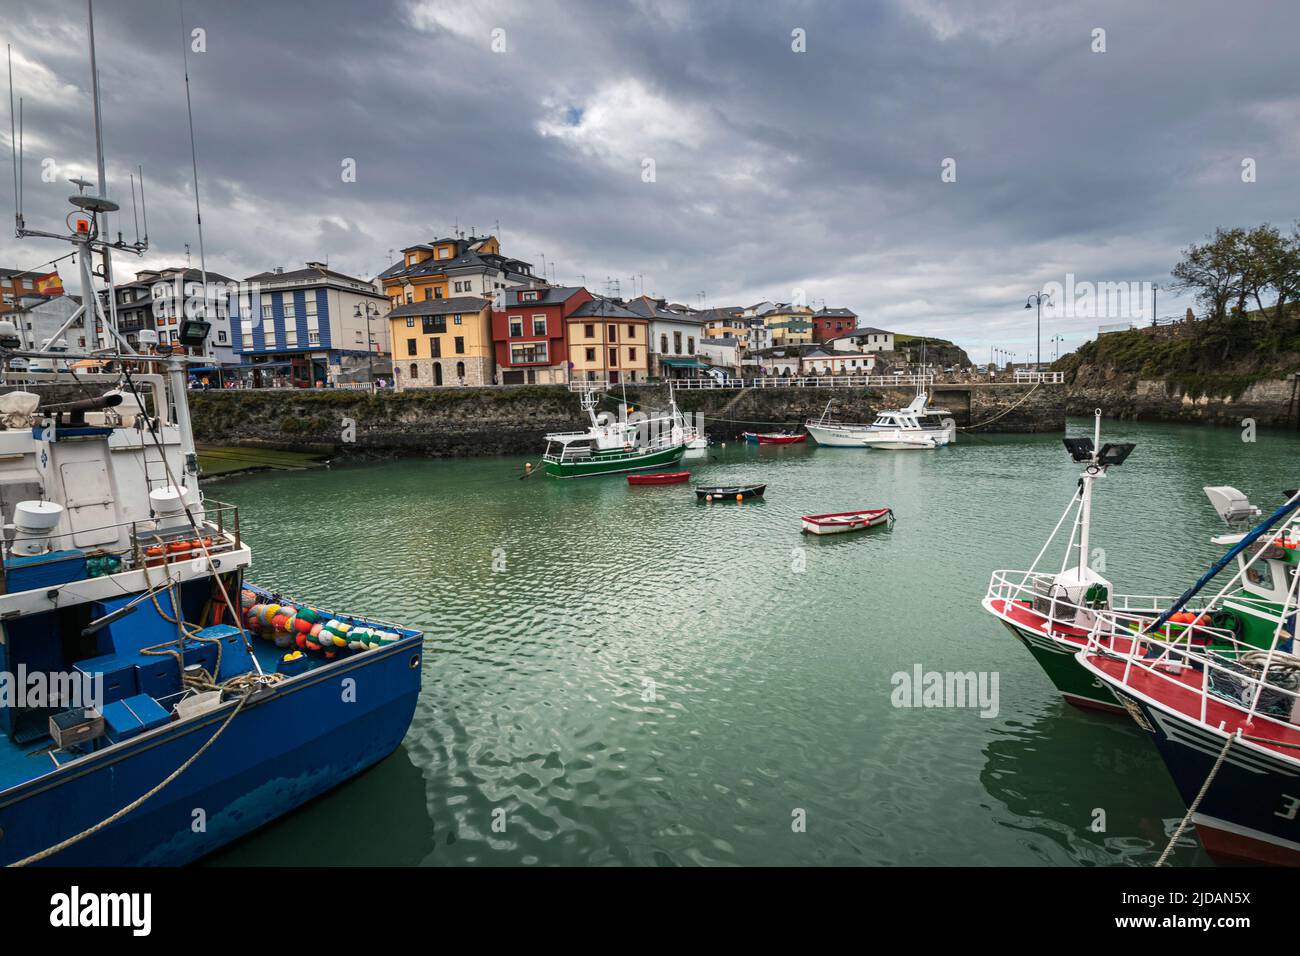 Puerto de vega asturias fotografías e imágenes de alta resolución - Alamy